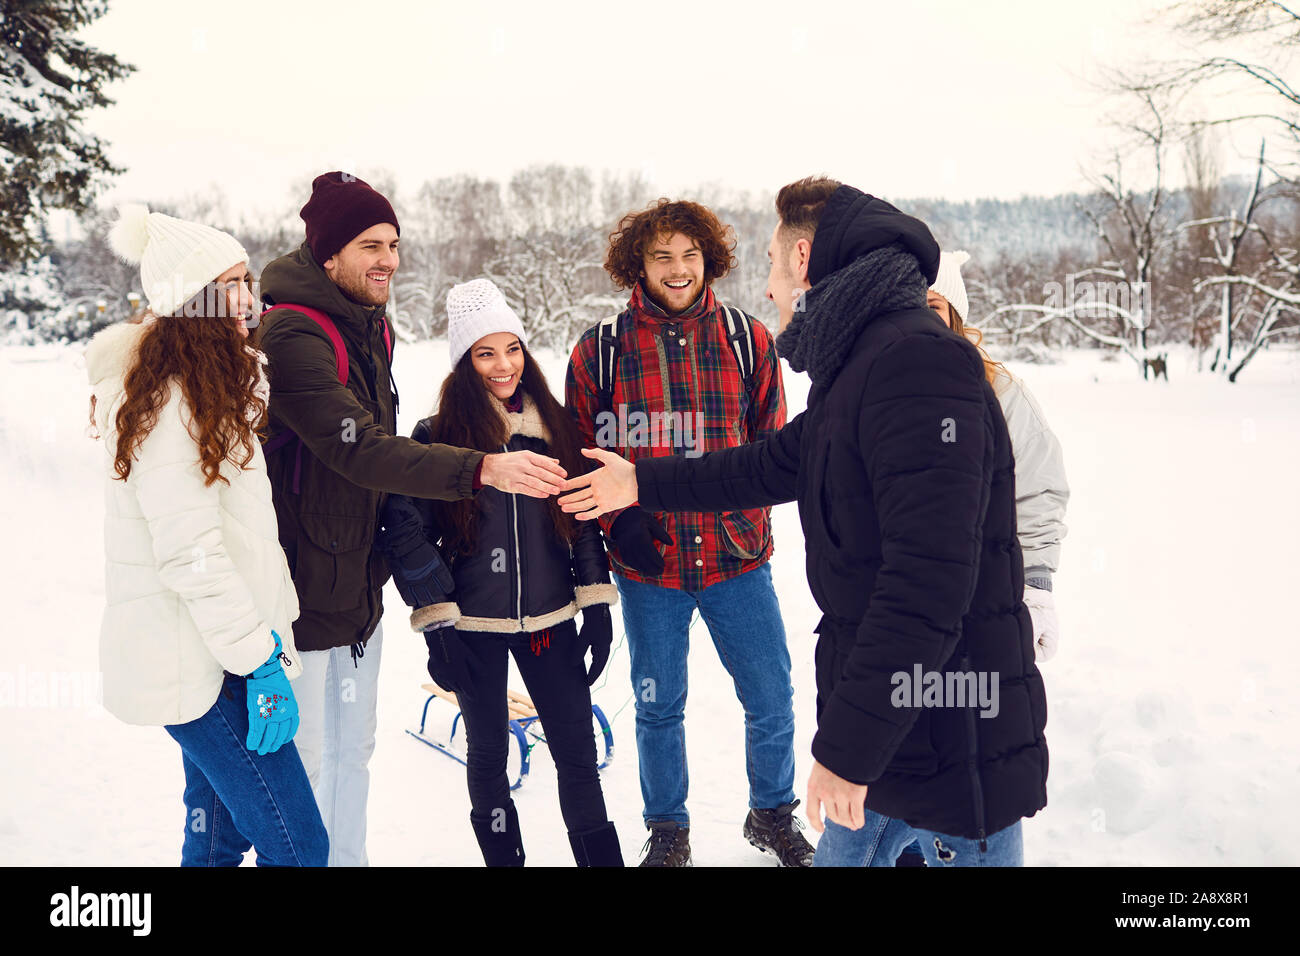 Réunion d'amis heureux dans winter park Banque D'Images